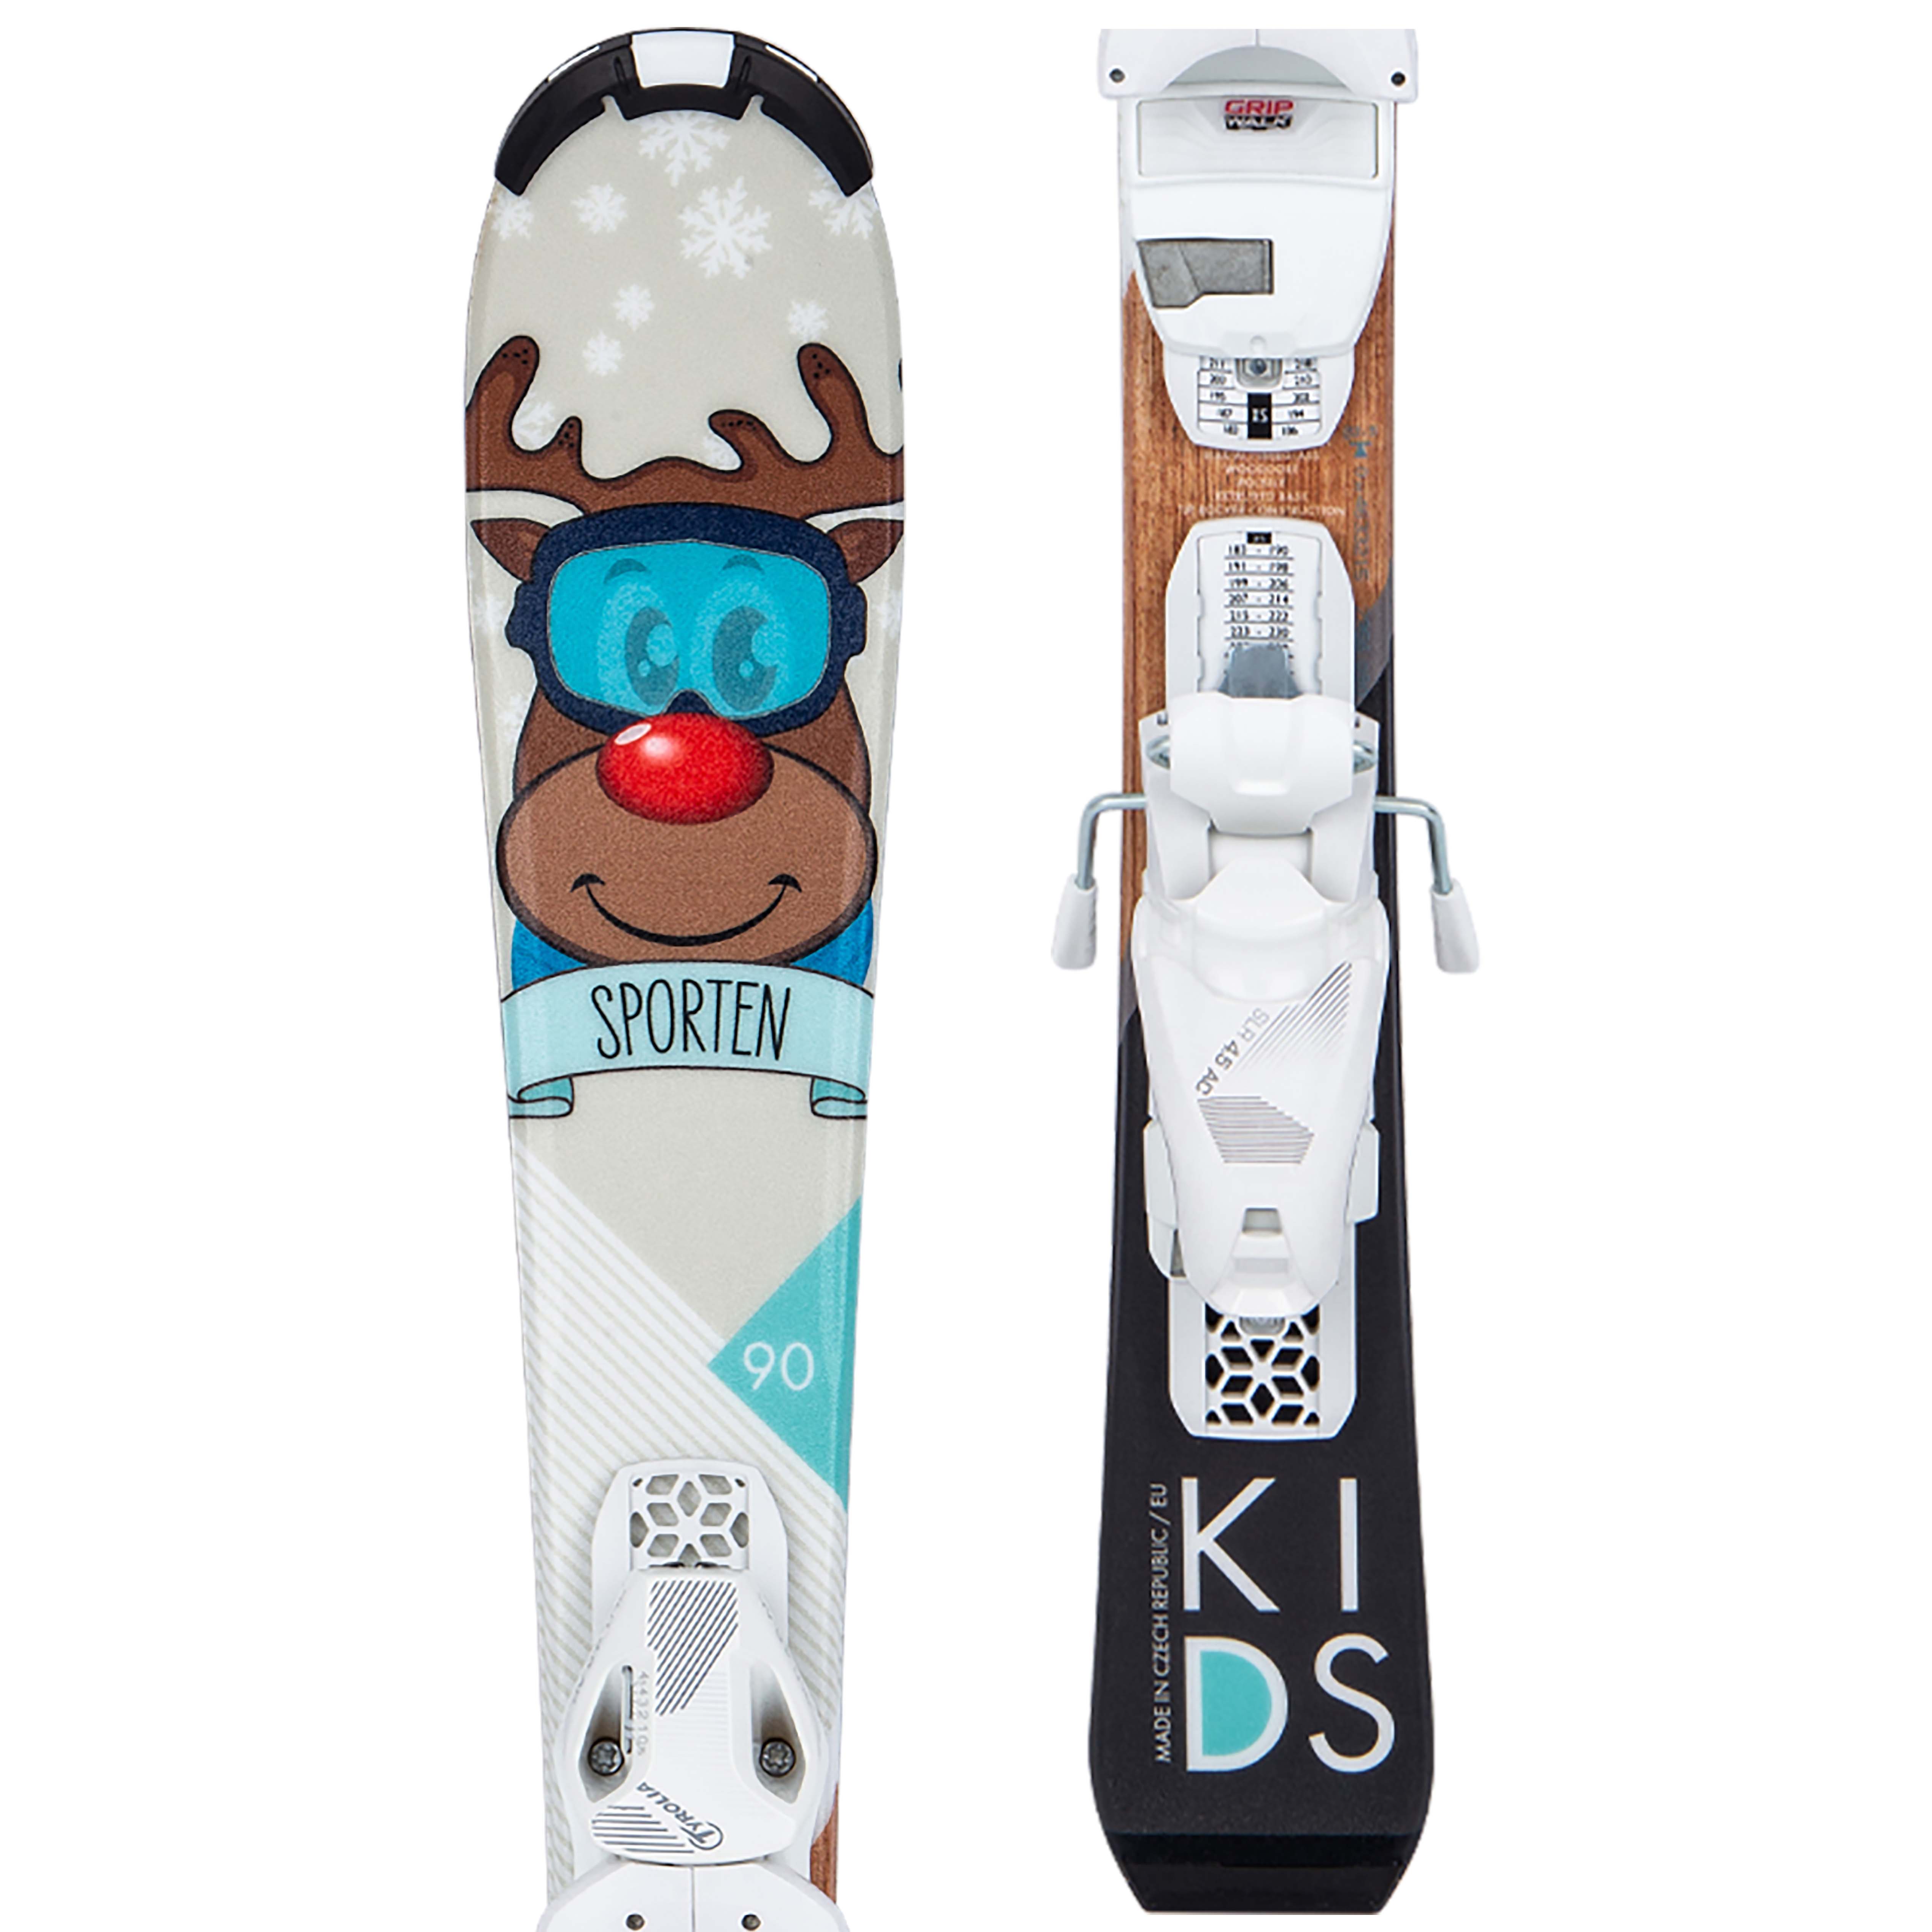 Детски ски за спускания